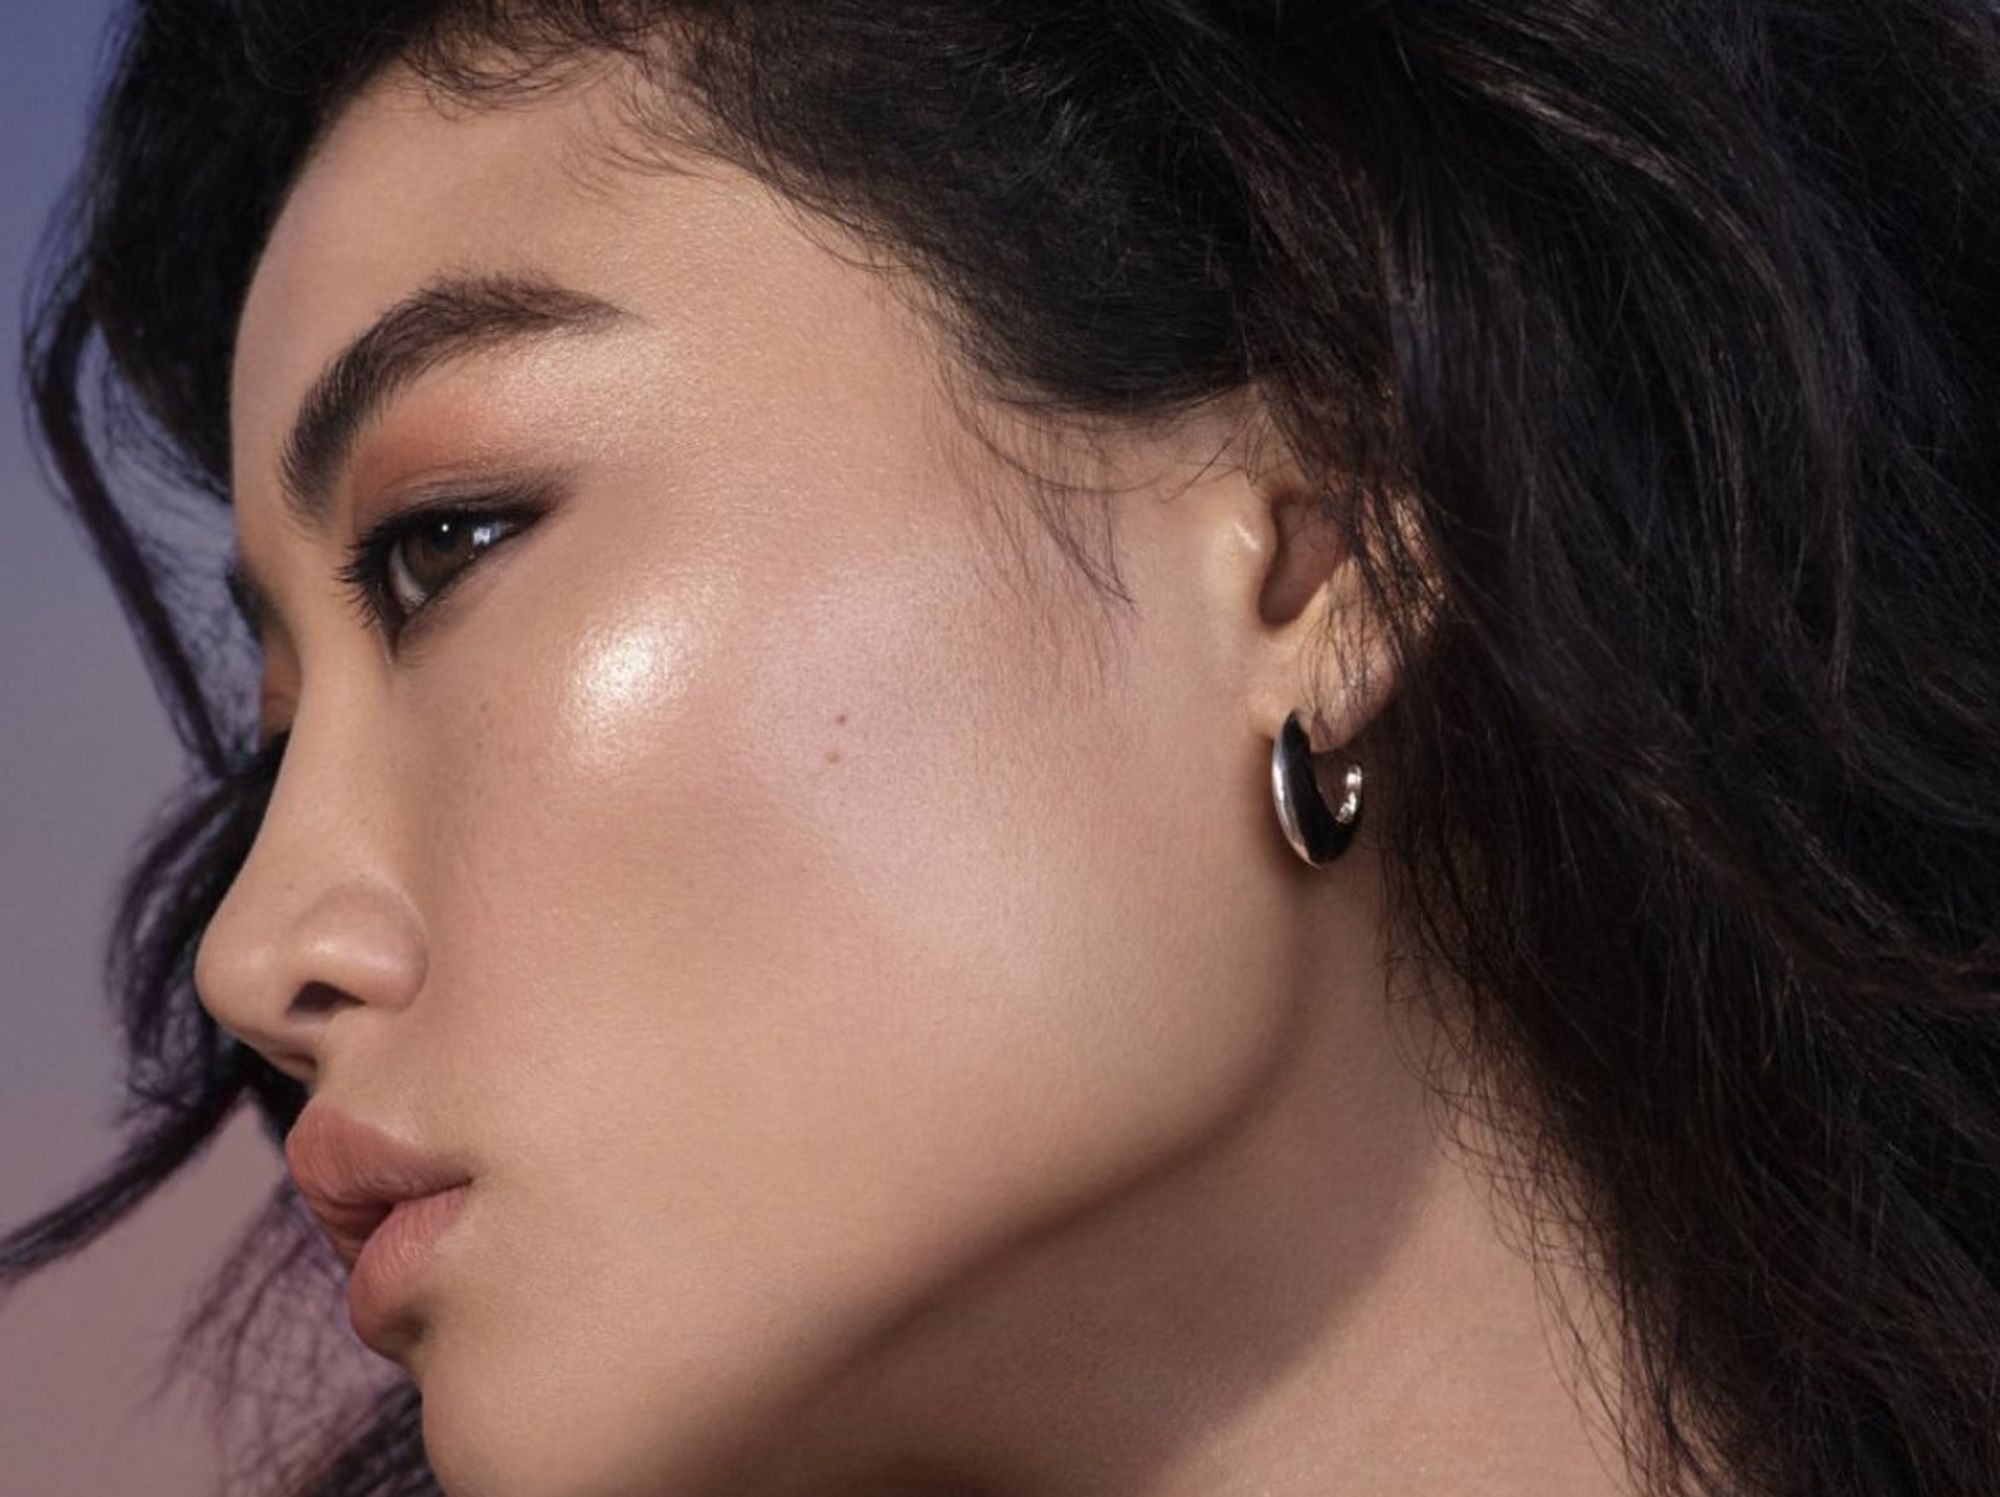 Asian woman with makeup 